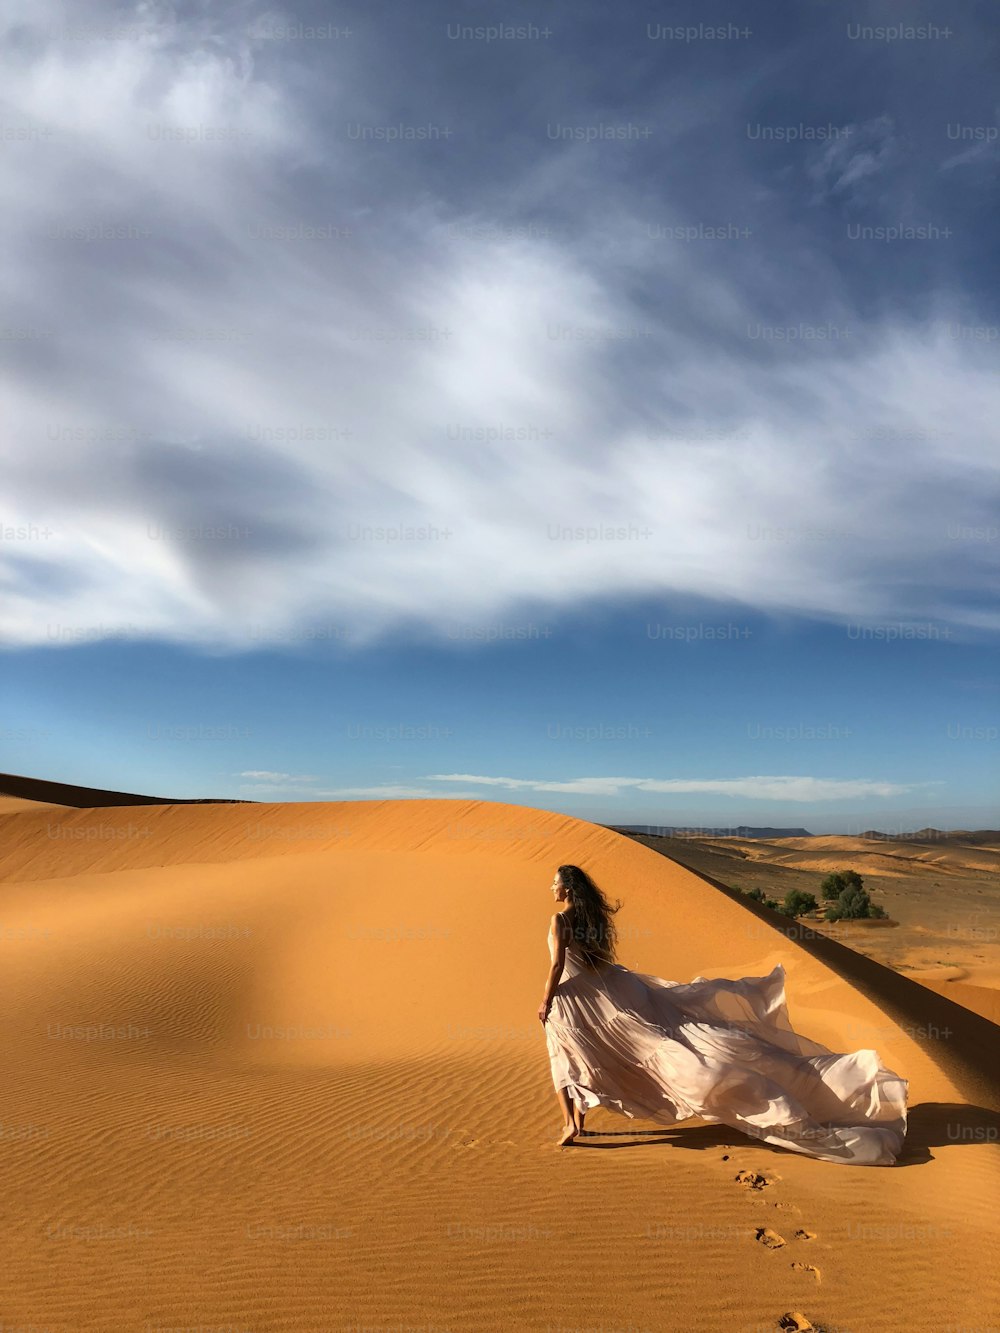 Mulher em incrível vestido de noiva de seda com vista fantástica das dunas de areia do deserto do Saara na luz do pôr do sol. Paisagem de Marrocos, África.